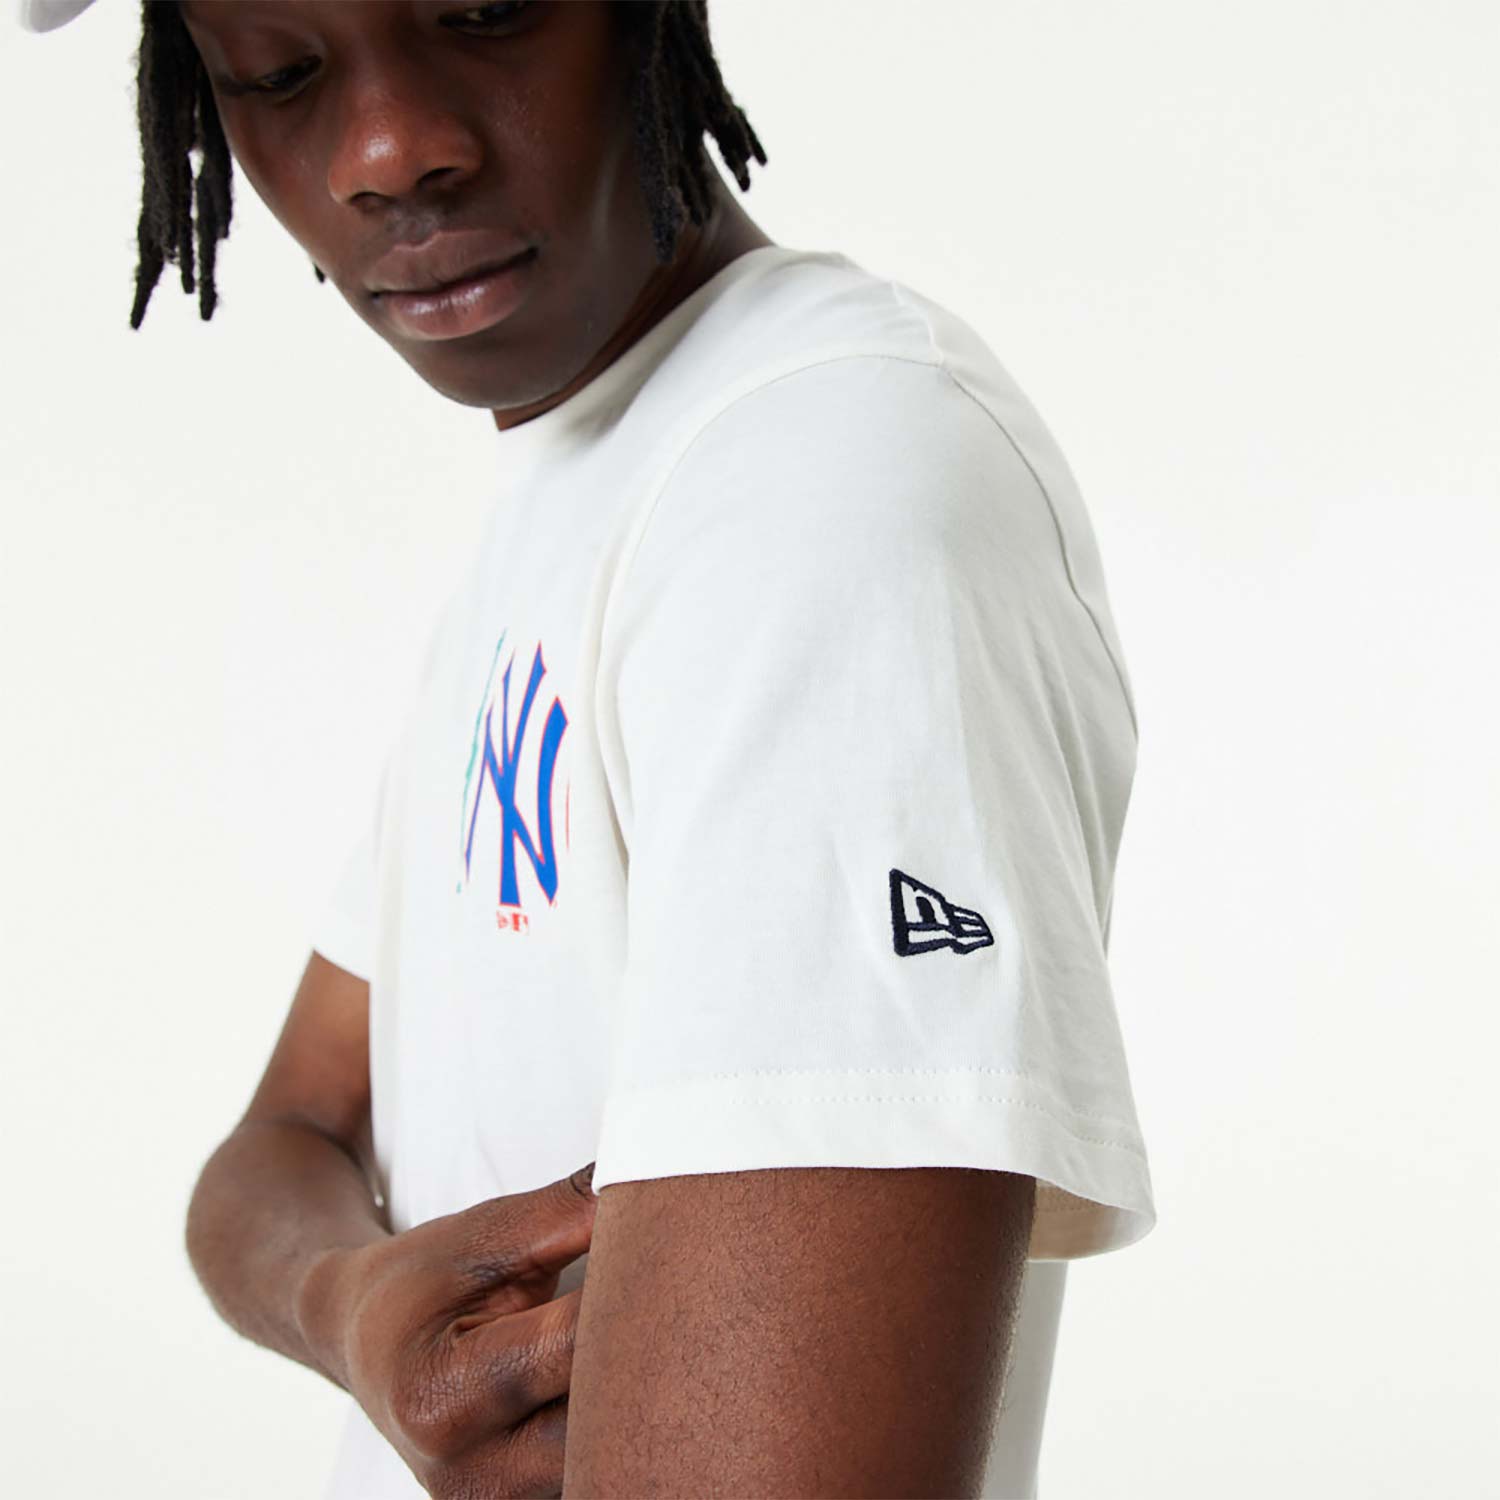 New York Yankees MLB City Graphic White T-Shirt